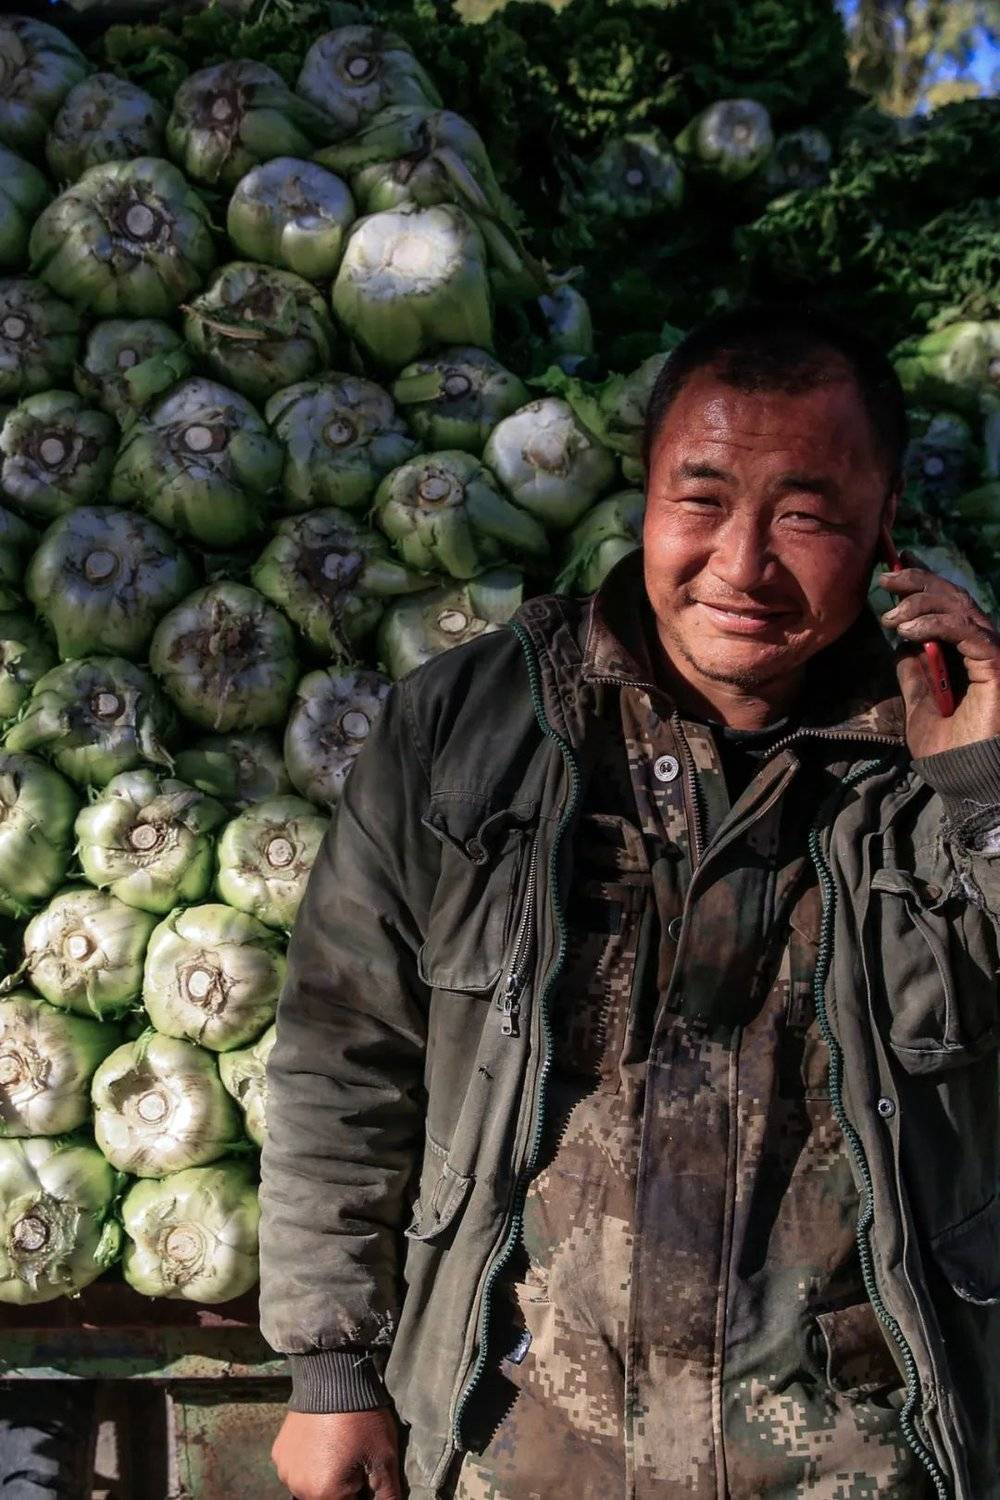 东北人有在秋季囤积过冬大白菜的传统，图为进城卖冬菜的农民。摄影/邱会宁